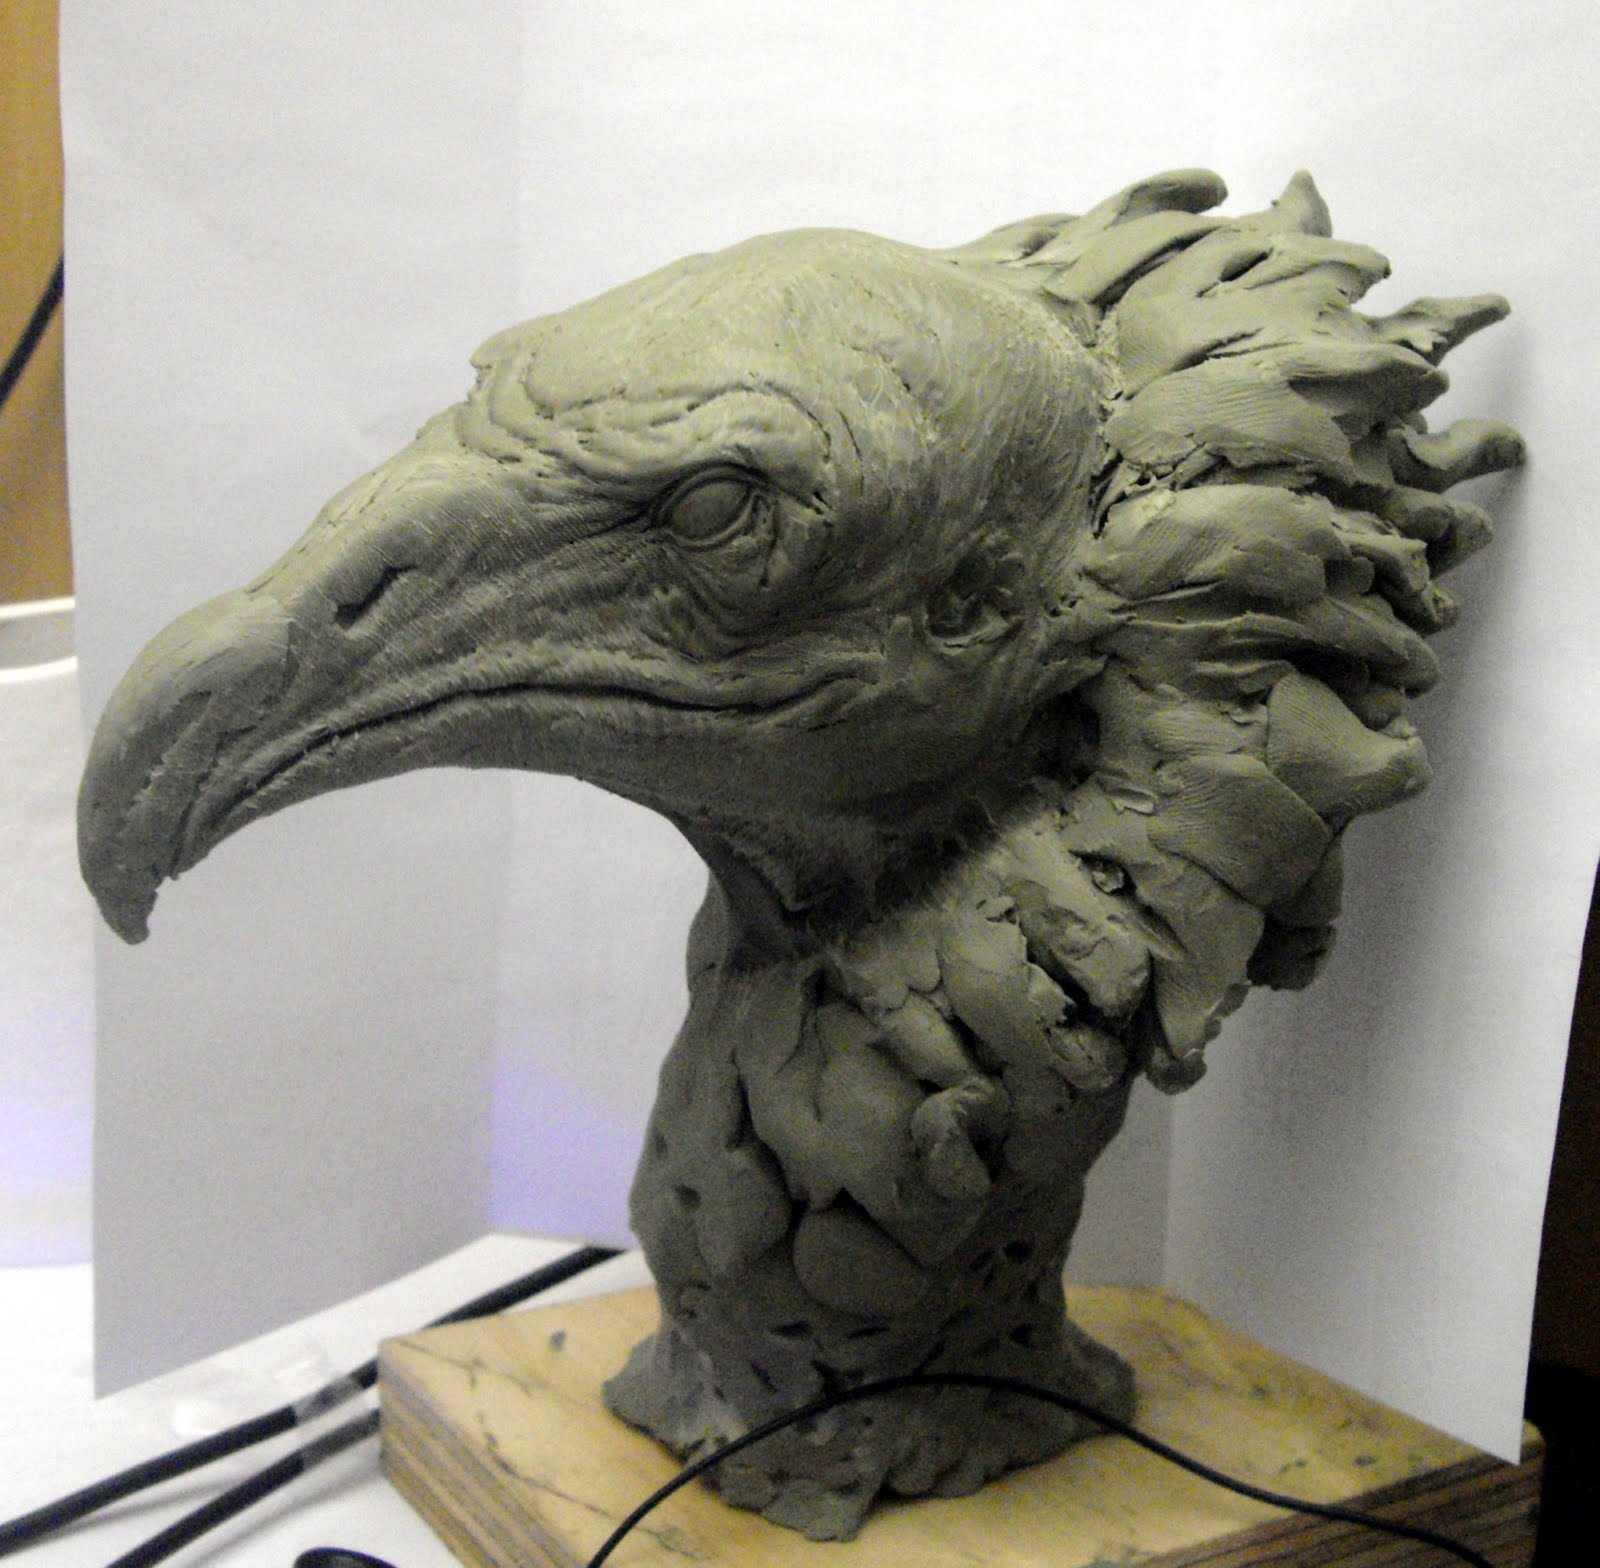 Aris Kolokontes art.: Vulture head WIP.